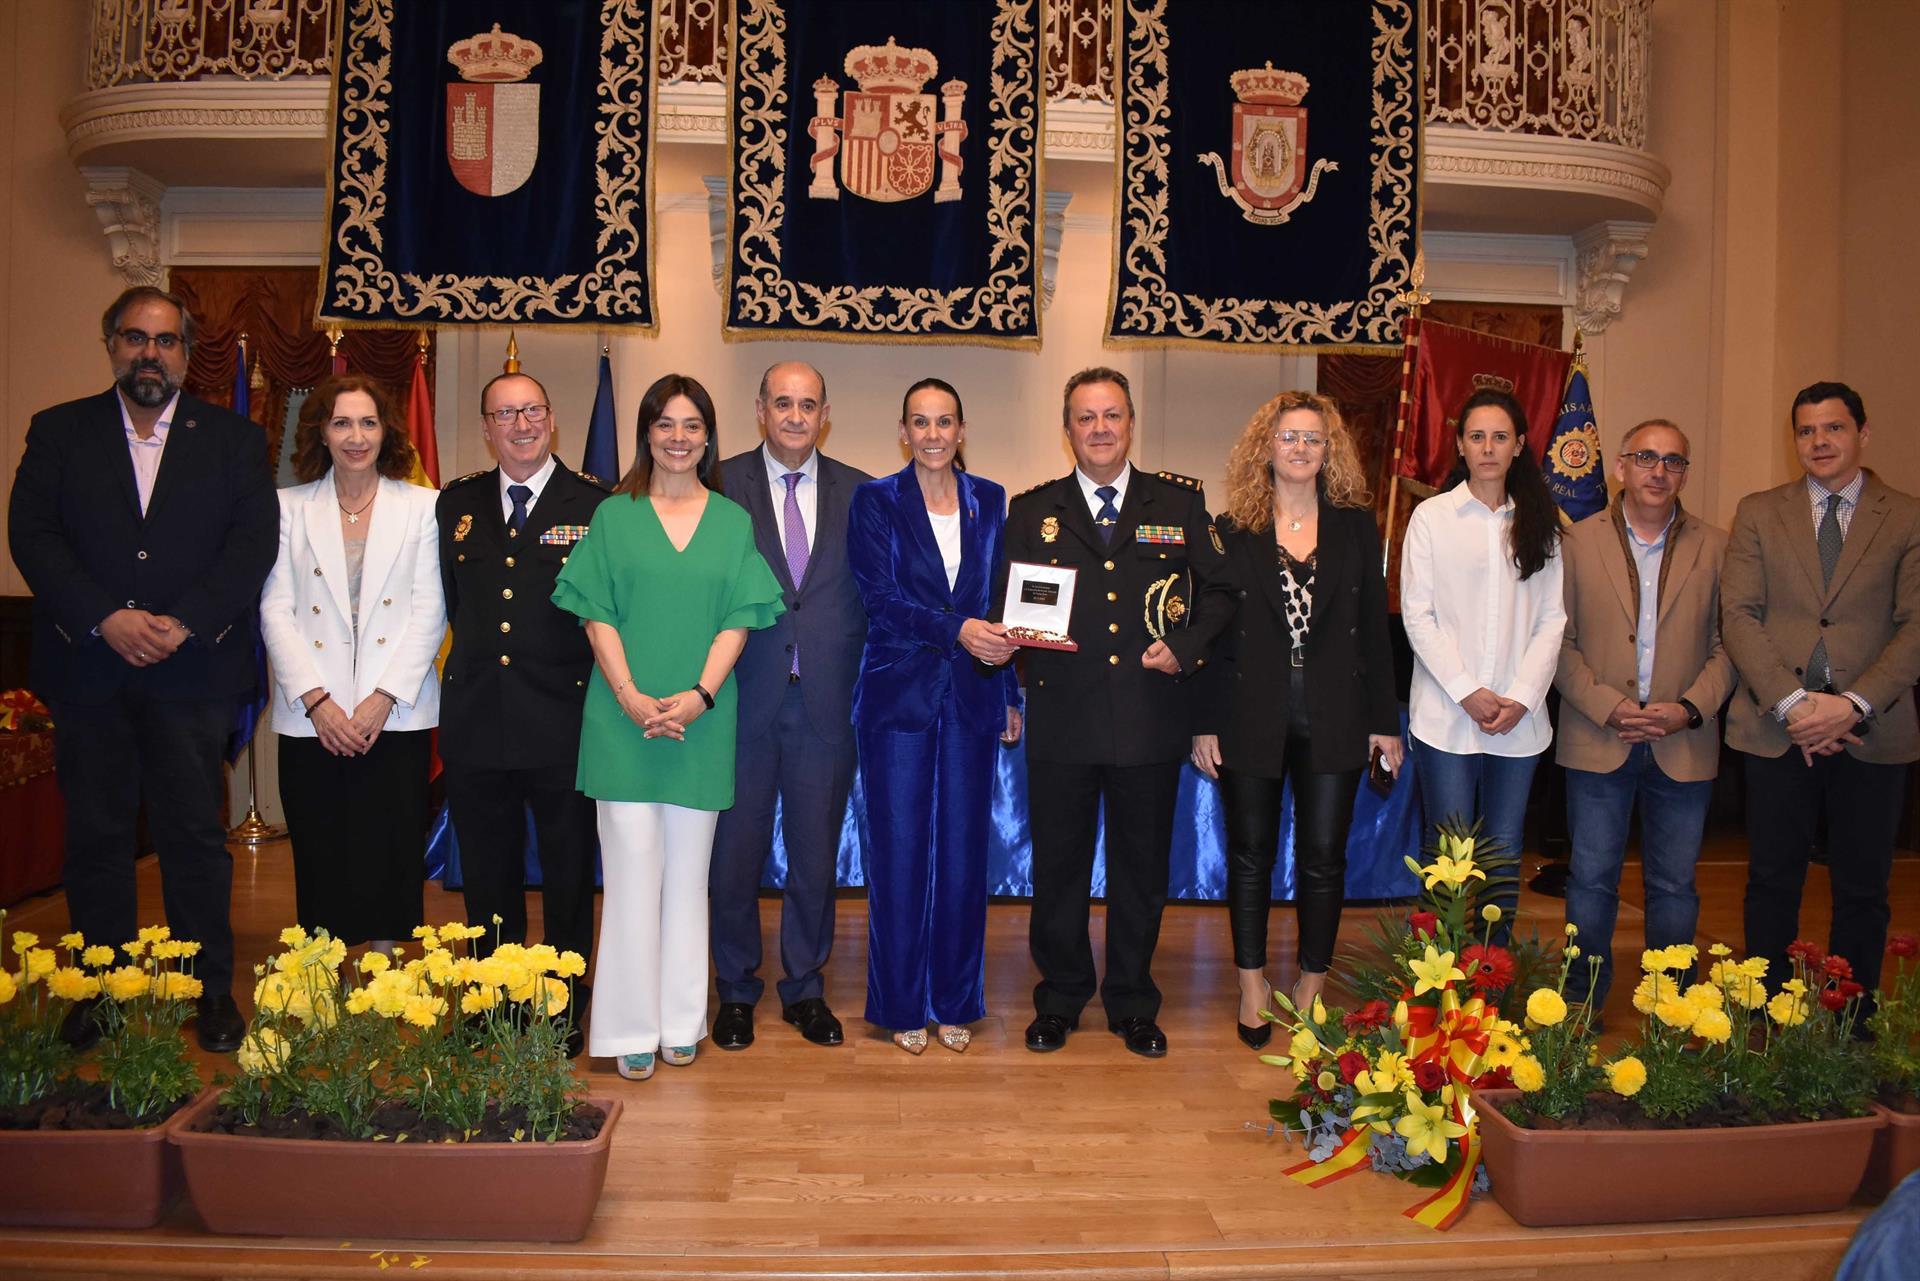 Entrega de la medalla del Ayuntamiento de Ciudad Real a la Comisaría de Policía Nacional de Ciudad Real - AYUNTAMIENTO DE CIUDAD REAL